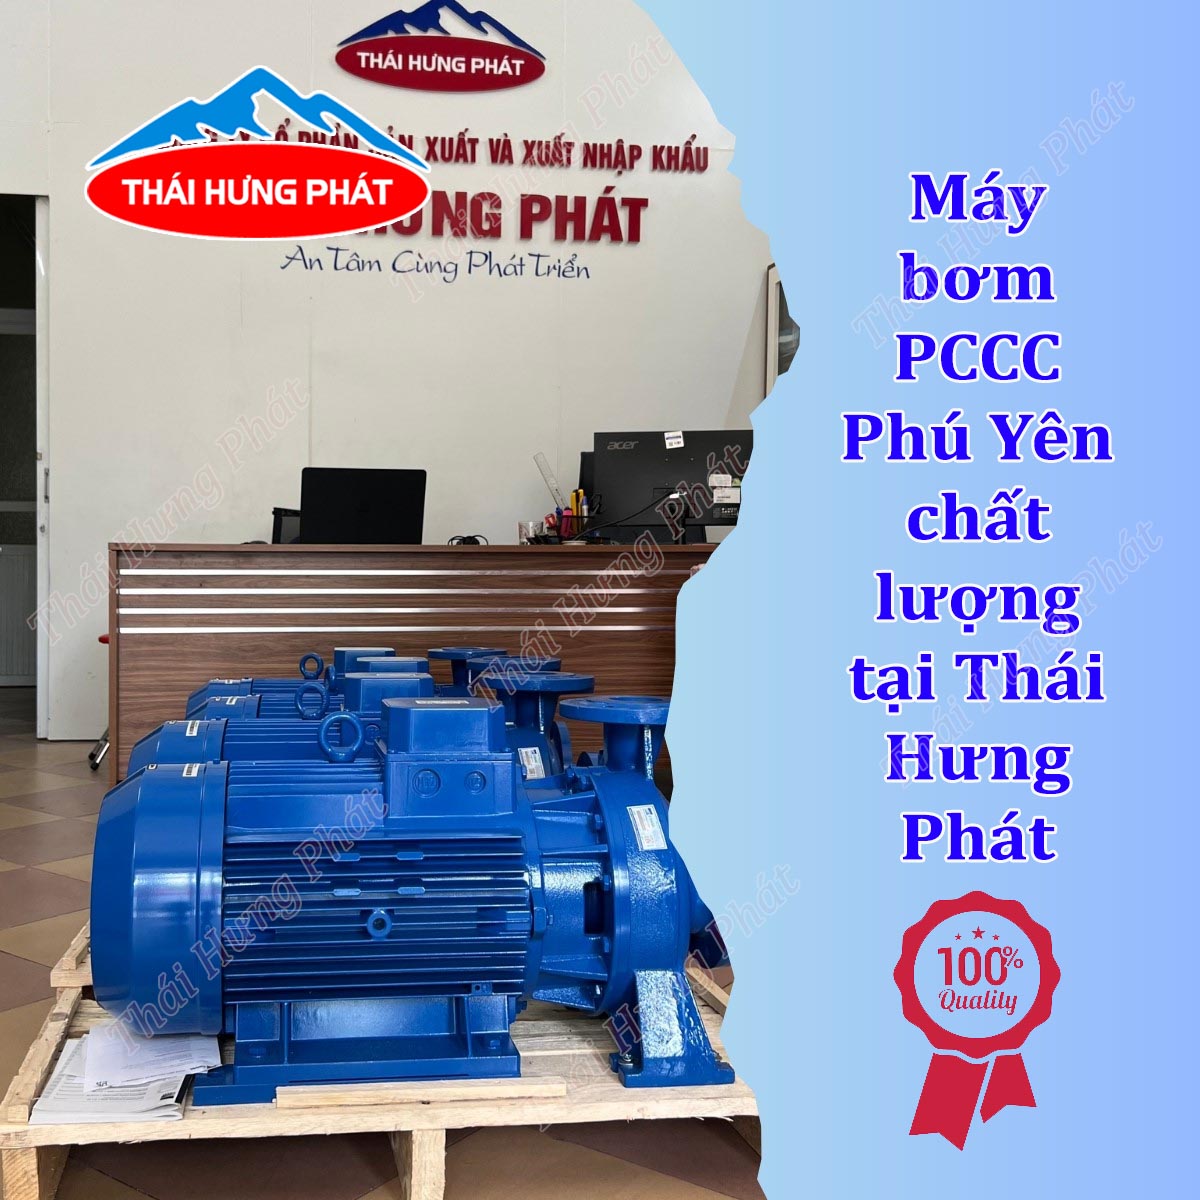 Mua máy bơm nước PCCC Phú Yên giá rẻ, chất lượng cao